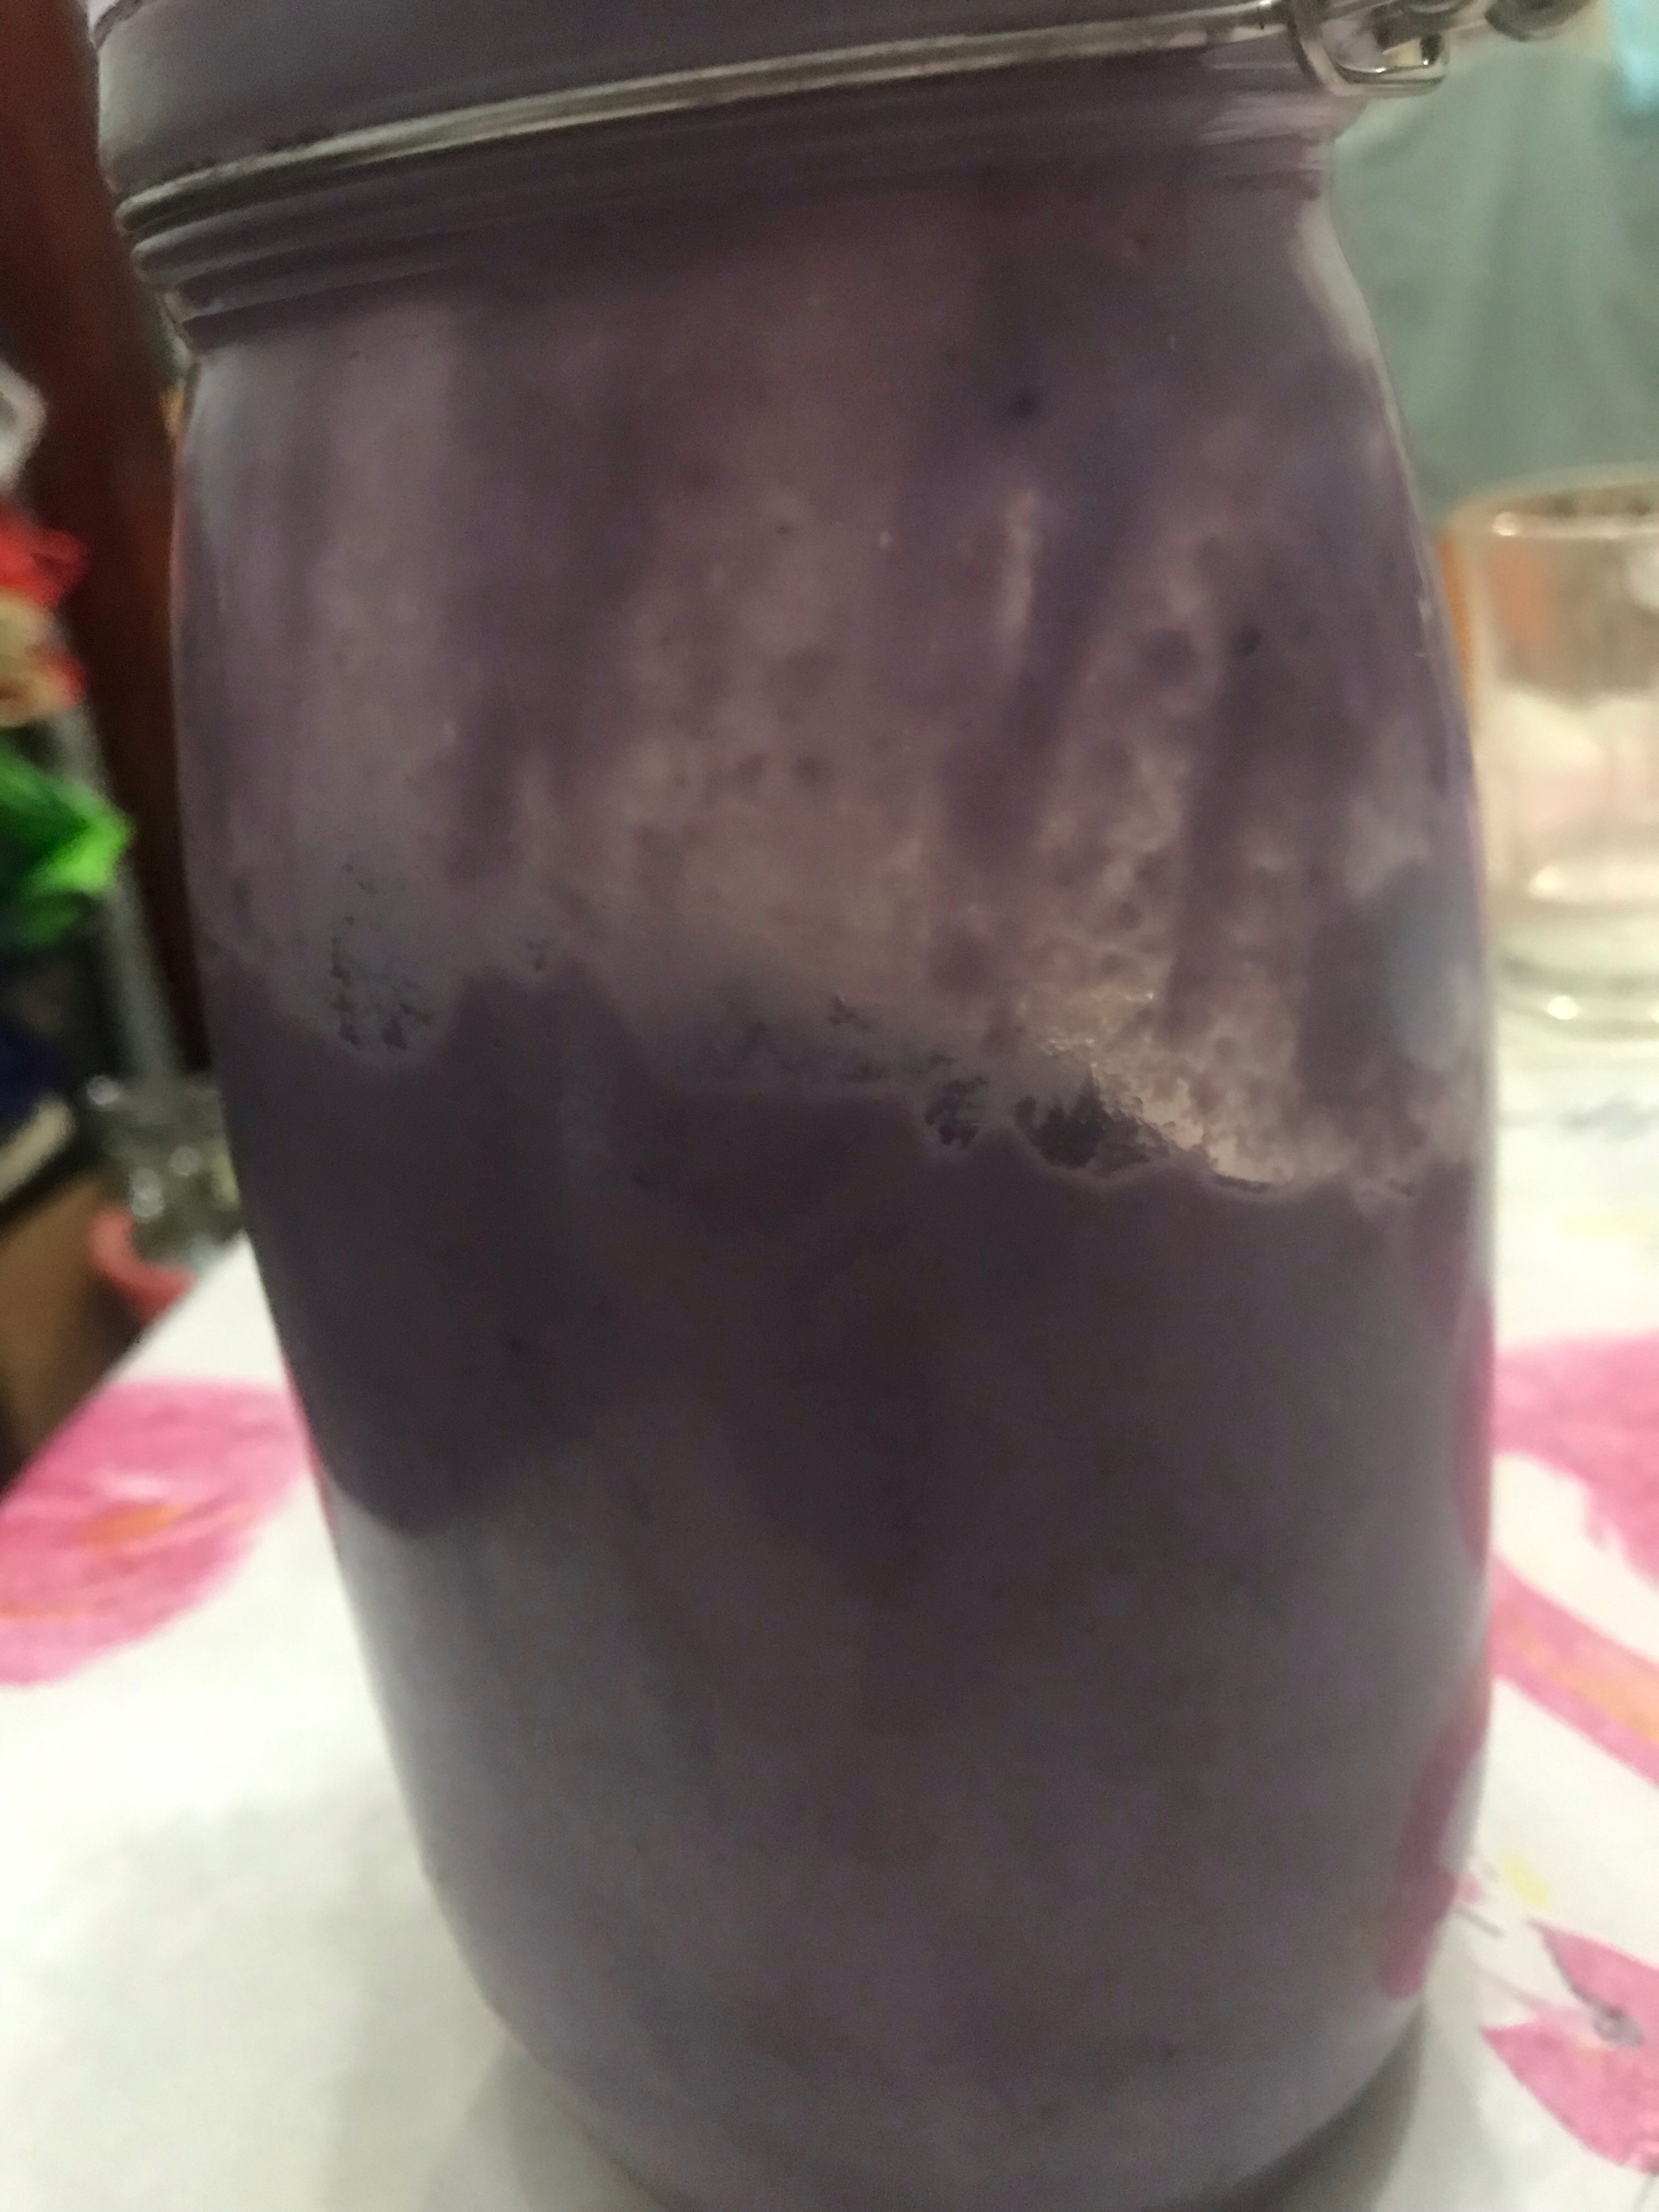 紫薯椰浆奶昔